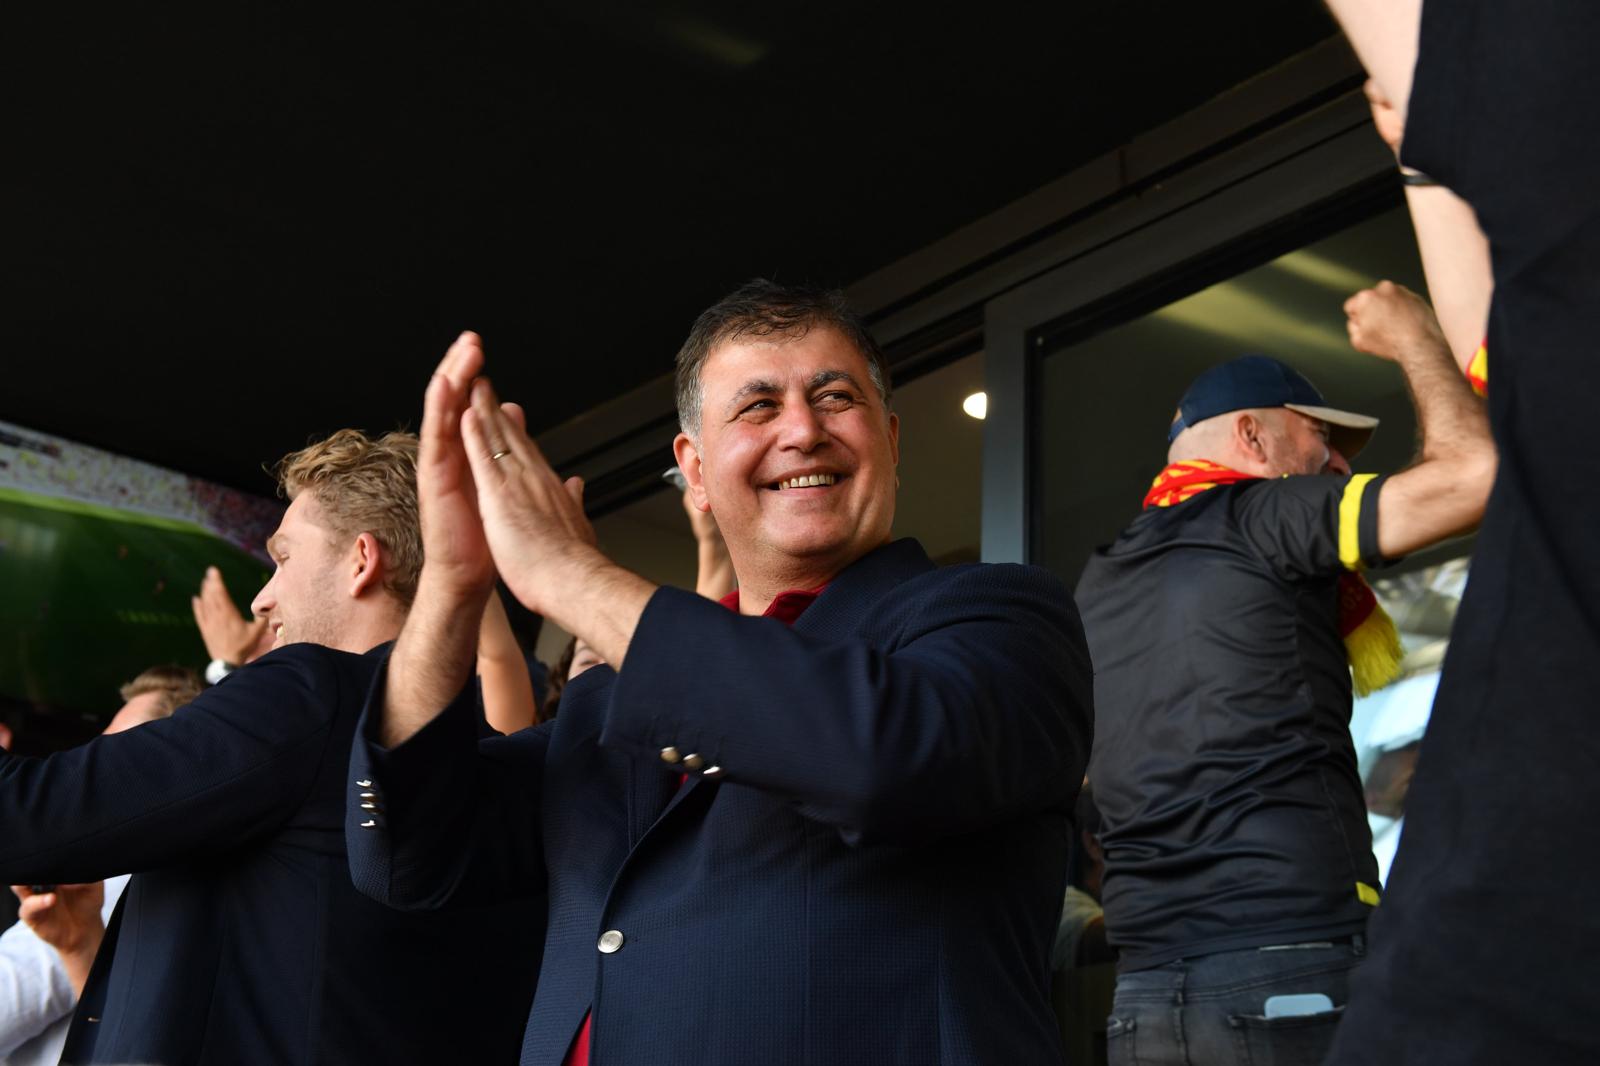 Başkan Tugay Göztepe'nin Süper Lig heyecanına ortak oldu